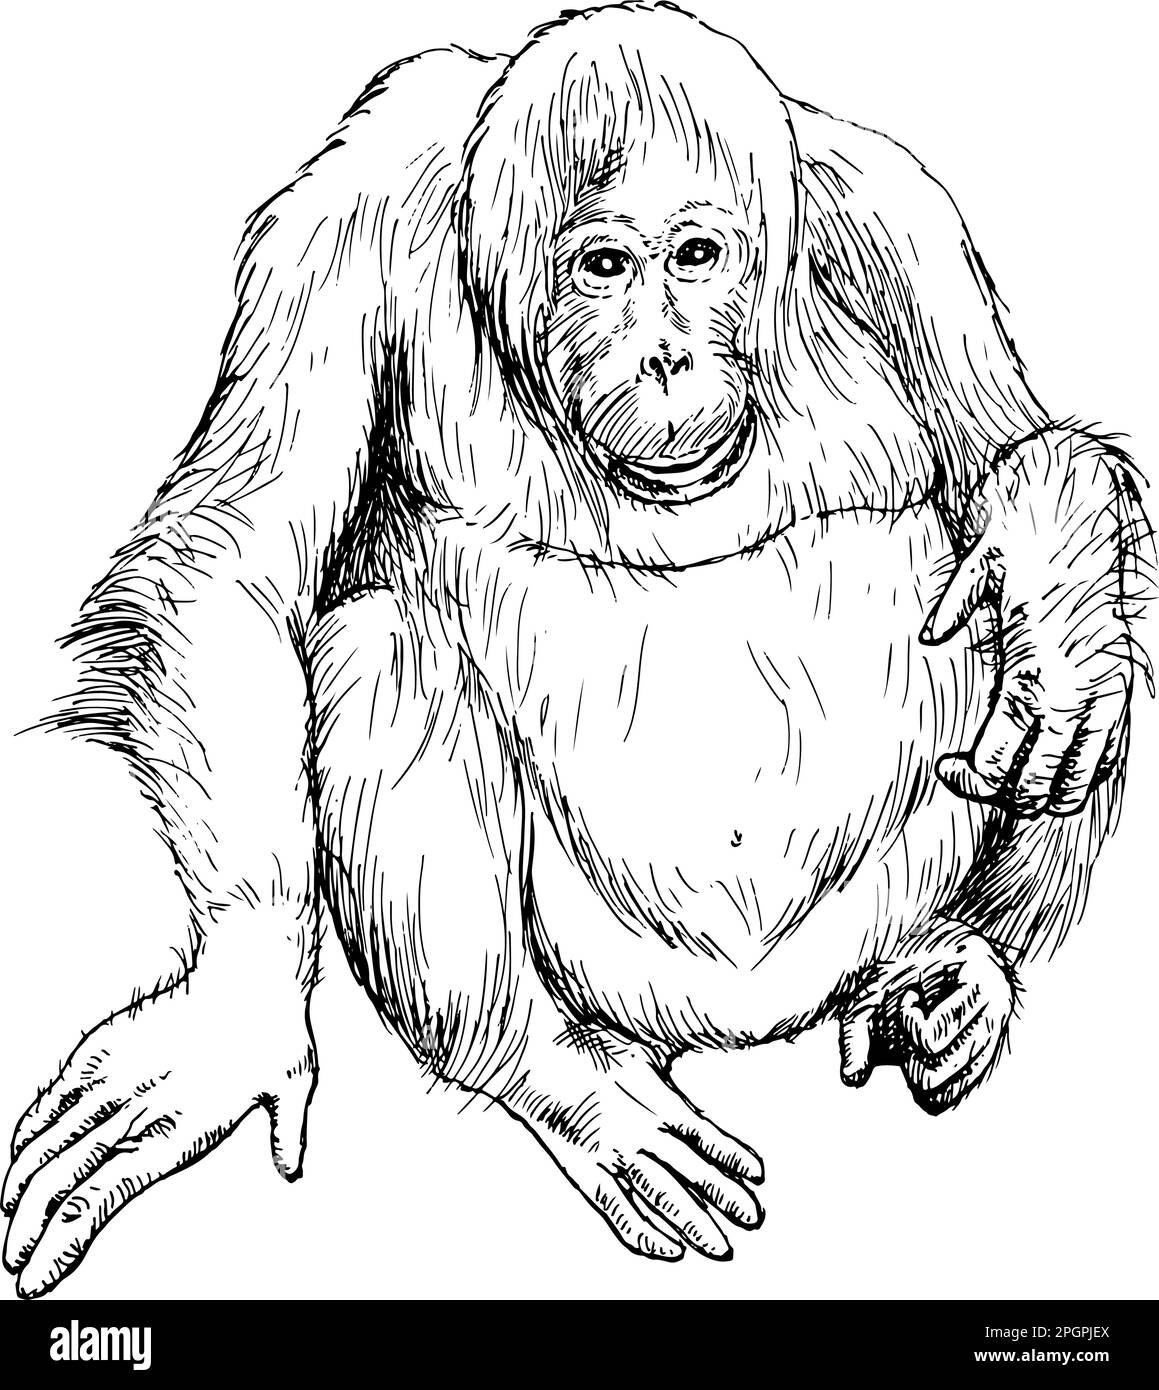 Disegno a mano realistico di orangutan. Illustrazione vettoriale Illustrazione Vettoriale